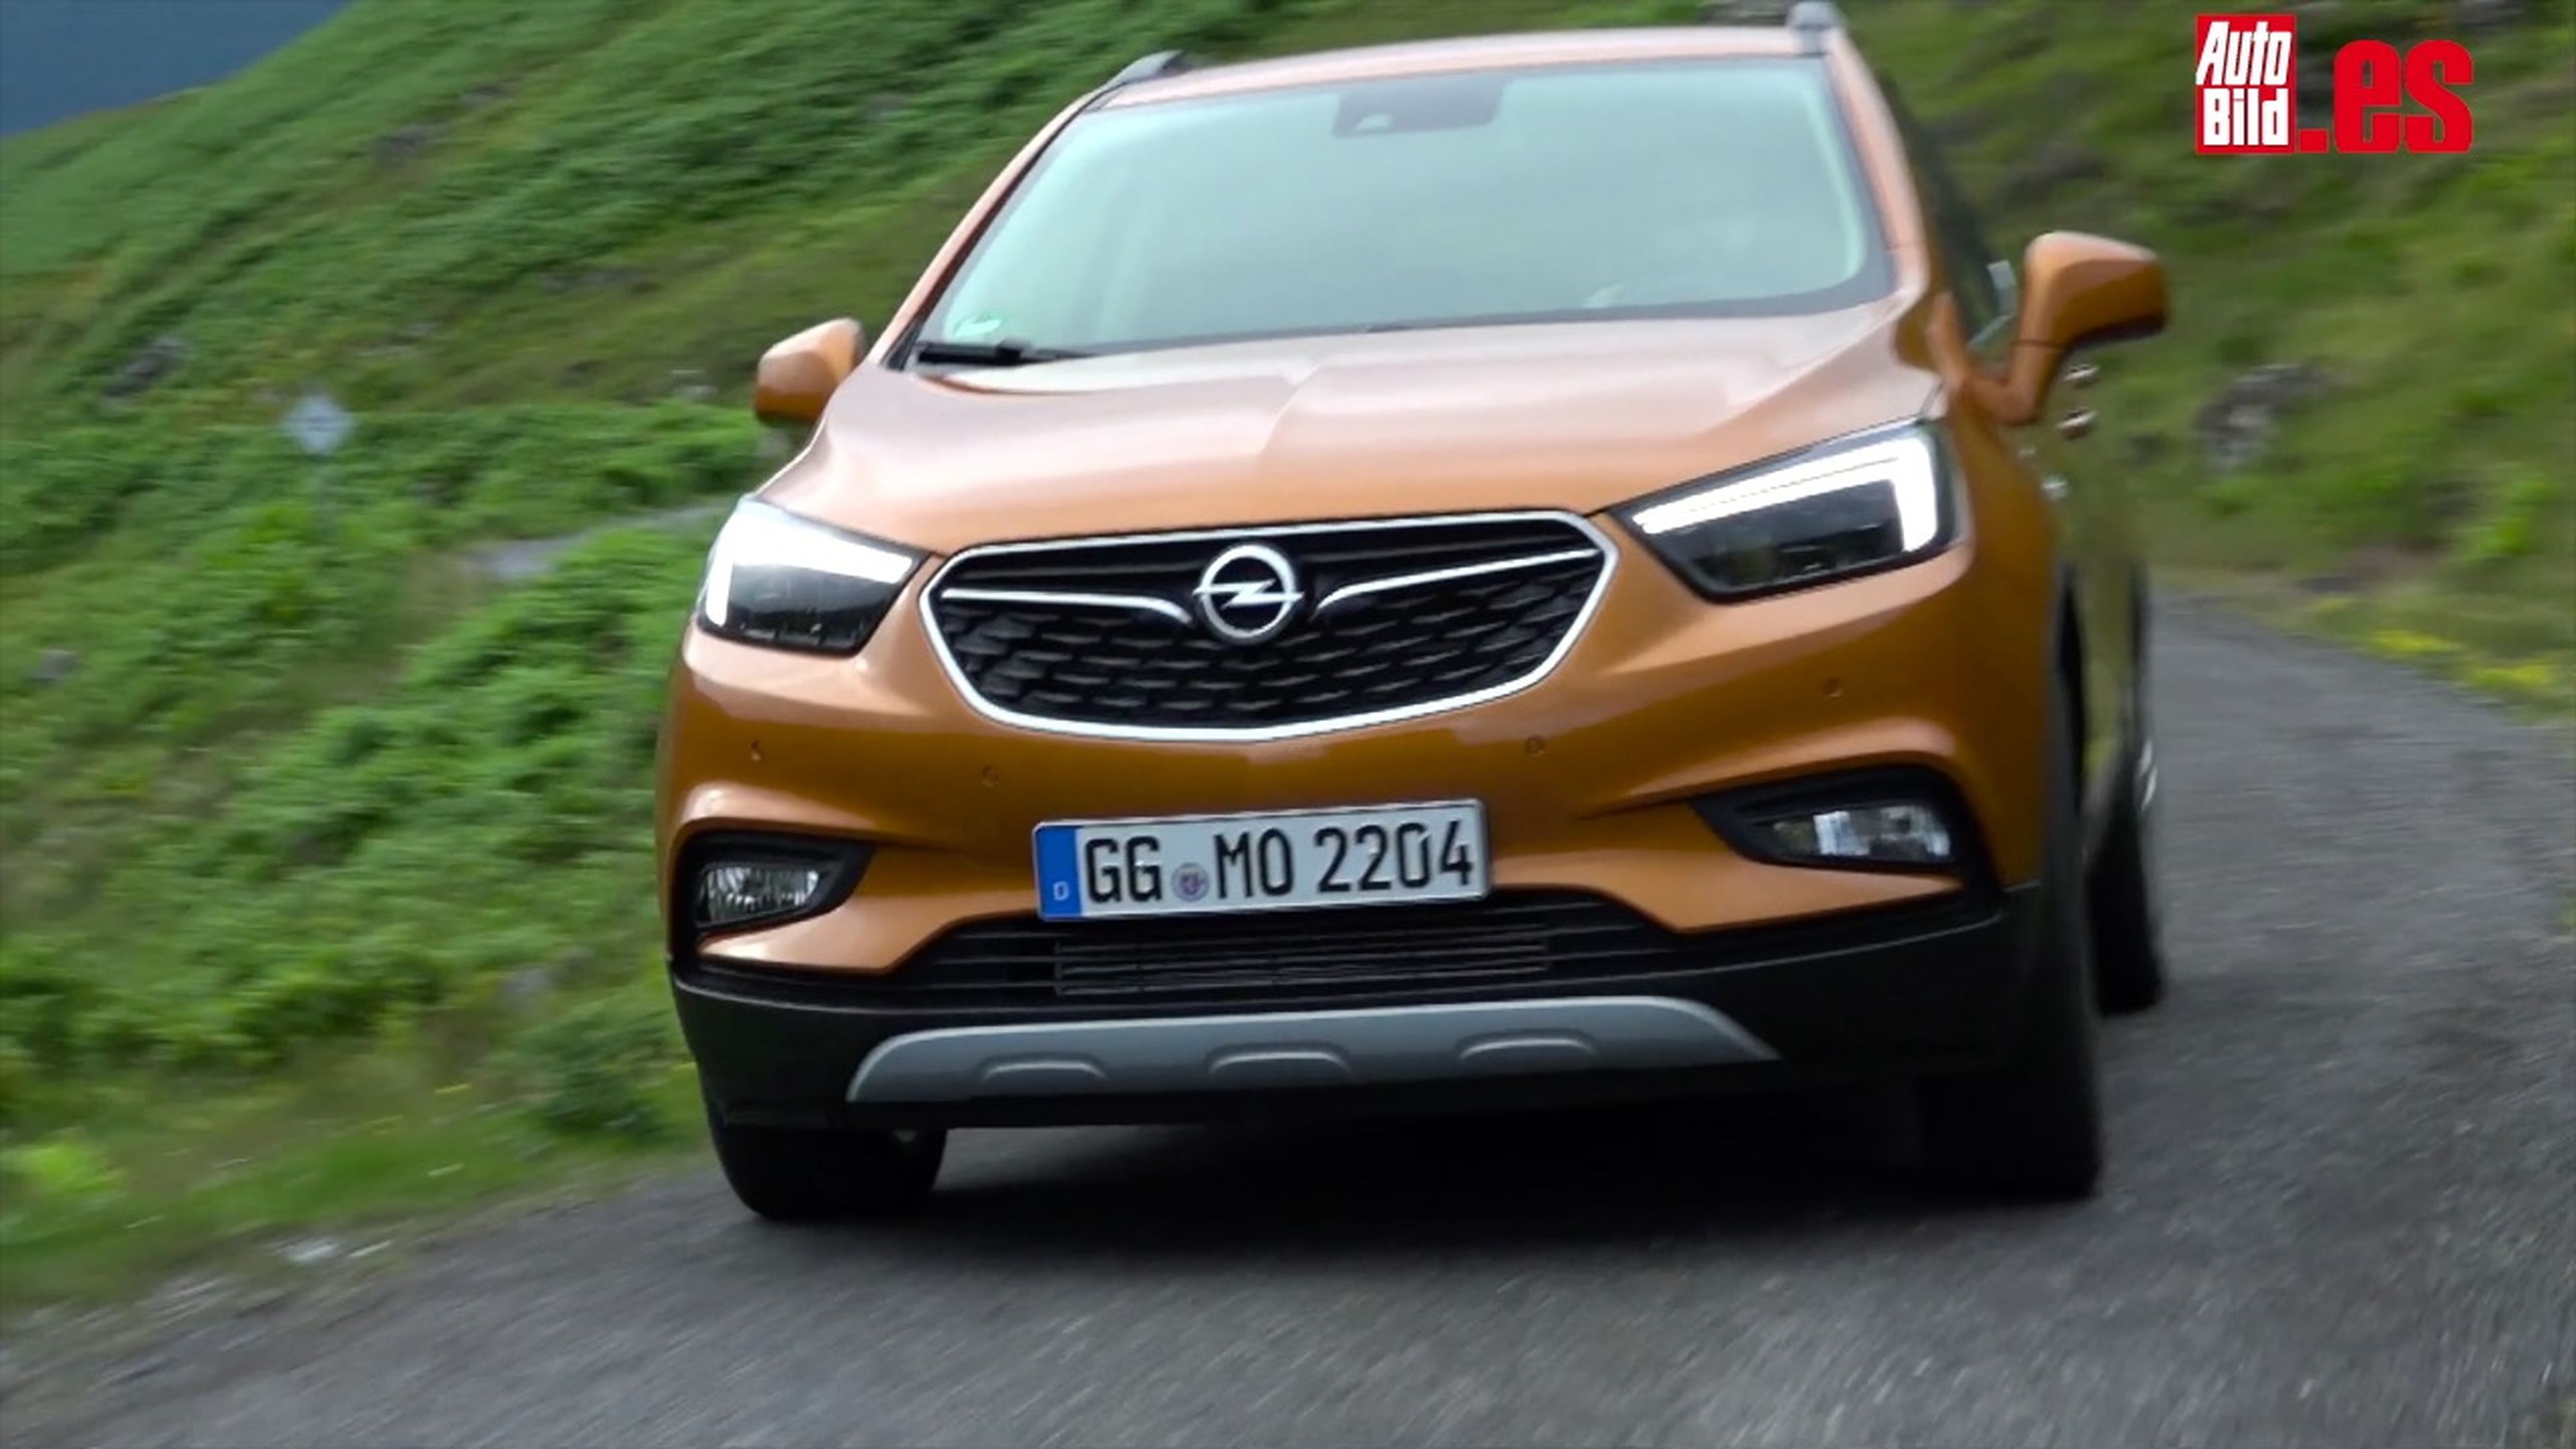 VIDEO: Primeras impresiones sobre el Opel Mokka X 2016